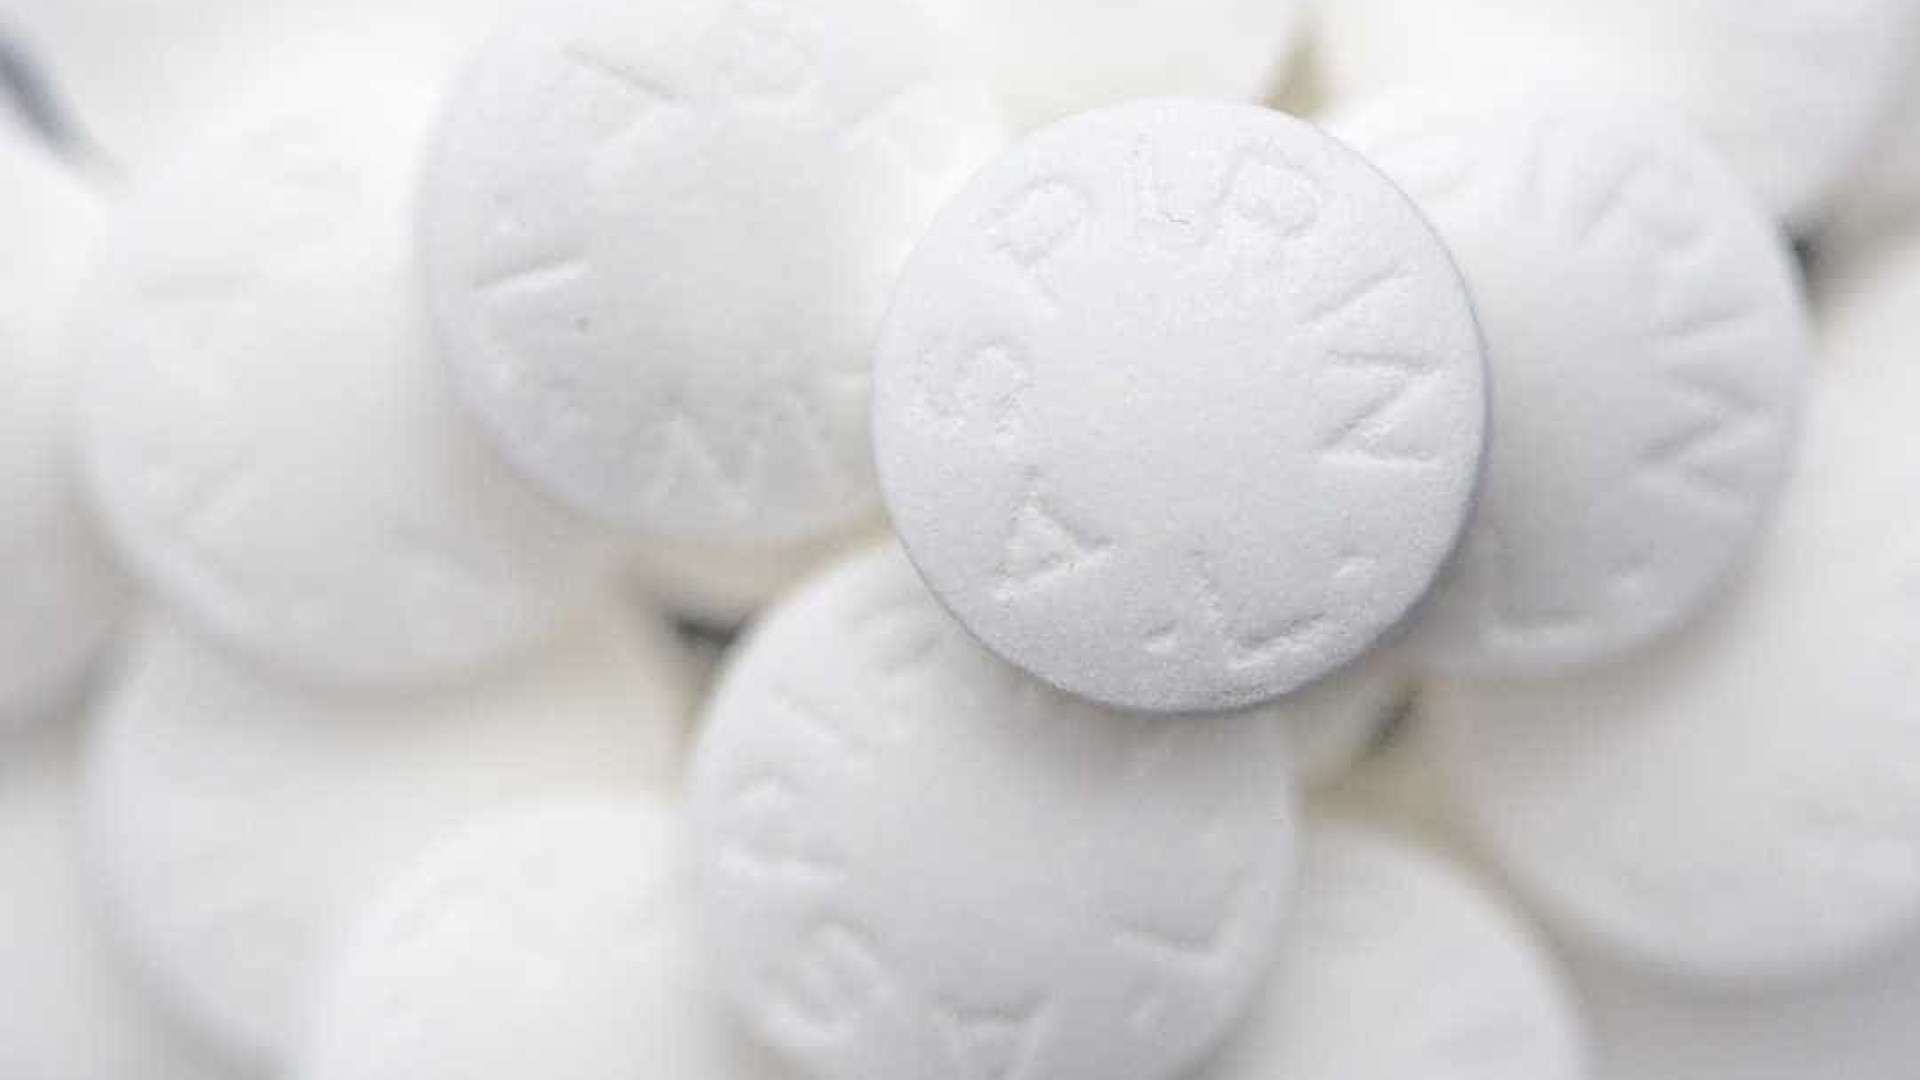 Tomar aspirina a cada três dias reduz risco
de infarto, aponta pesquisa